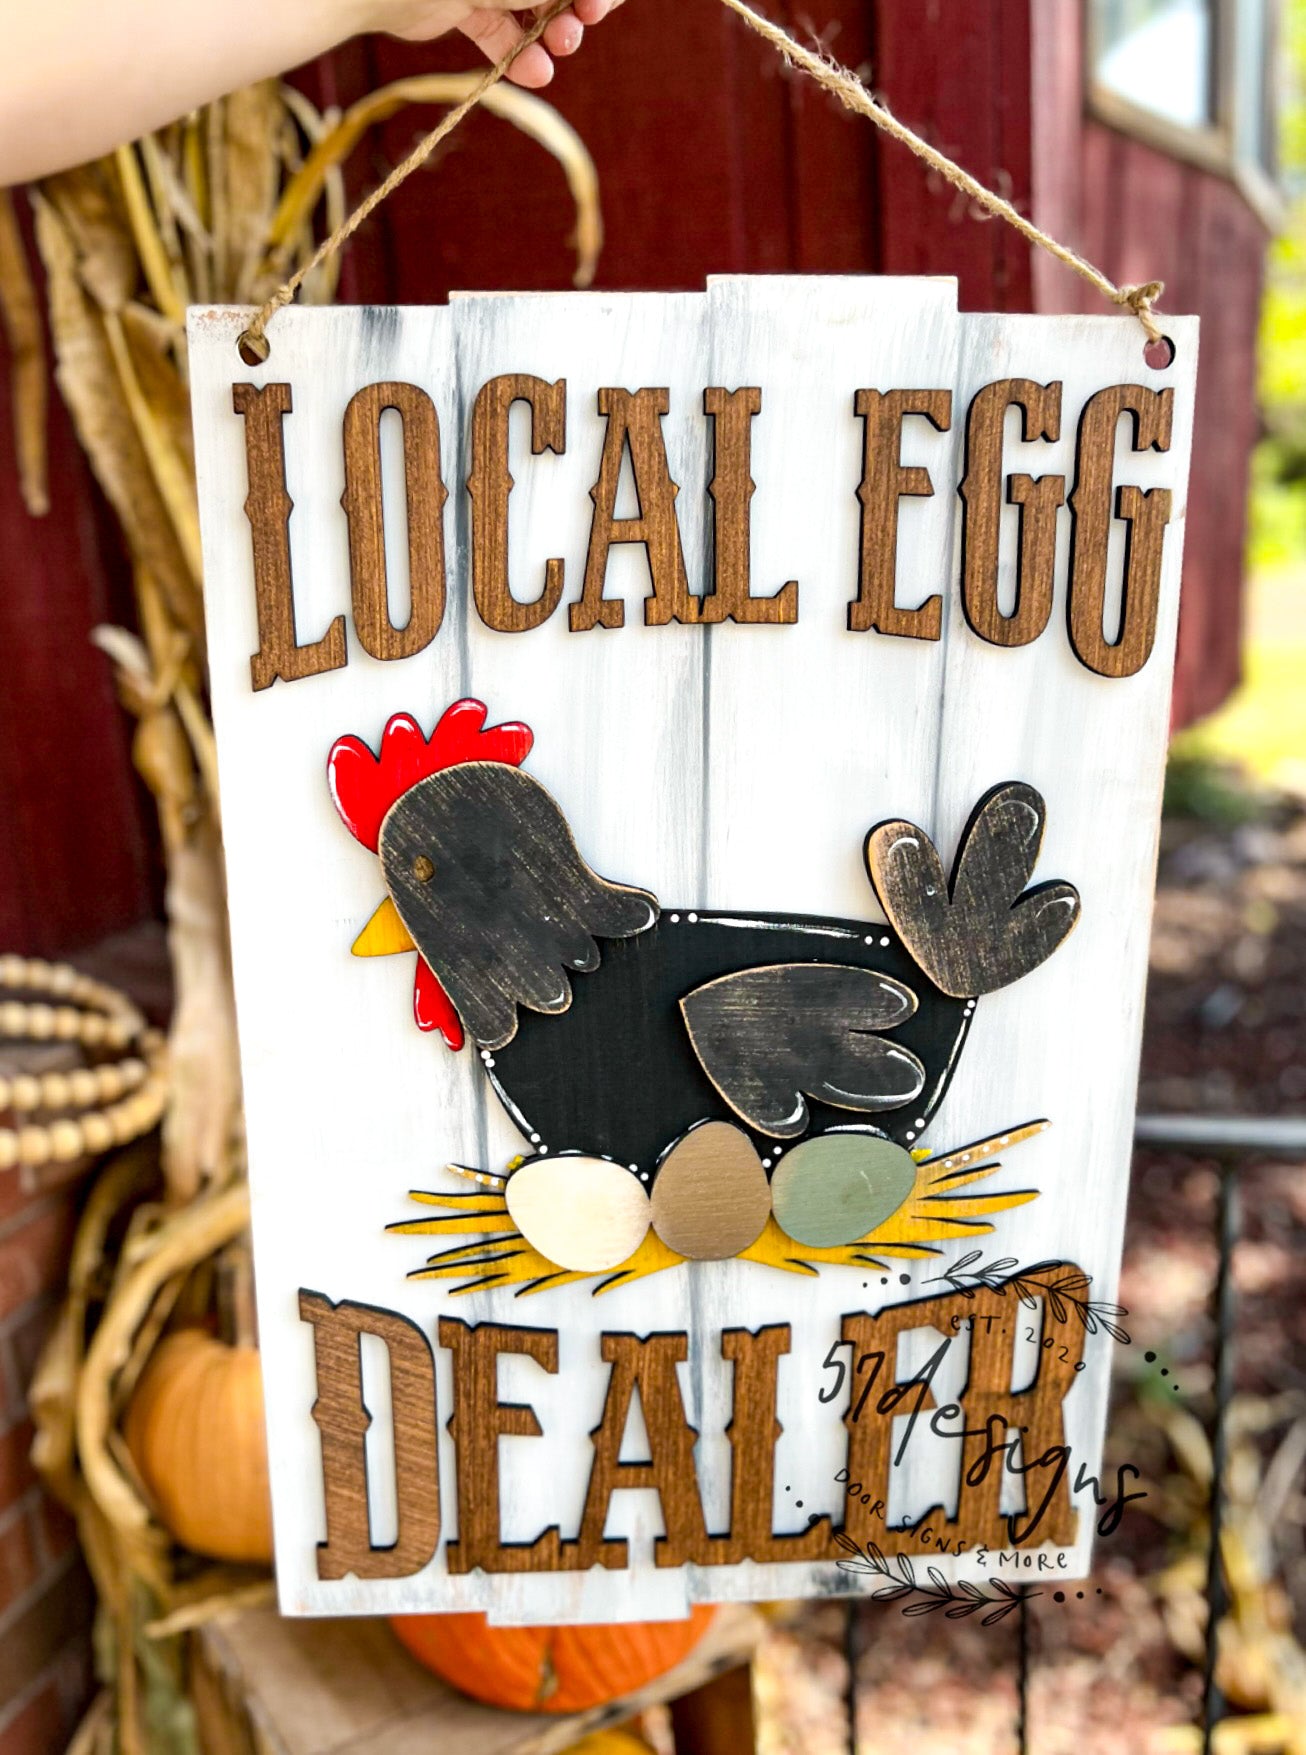 Egg dealer